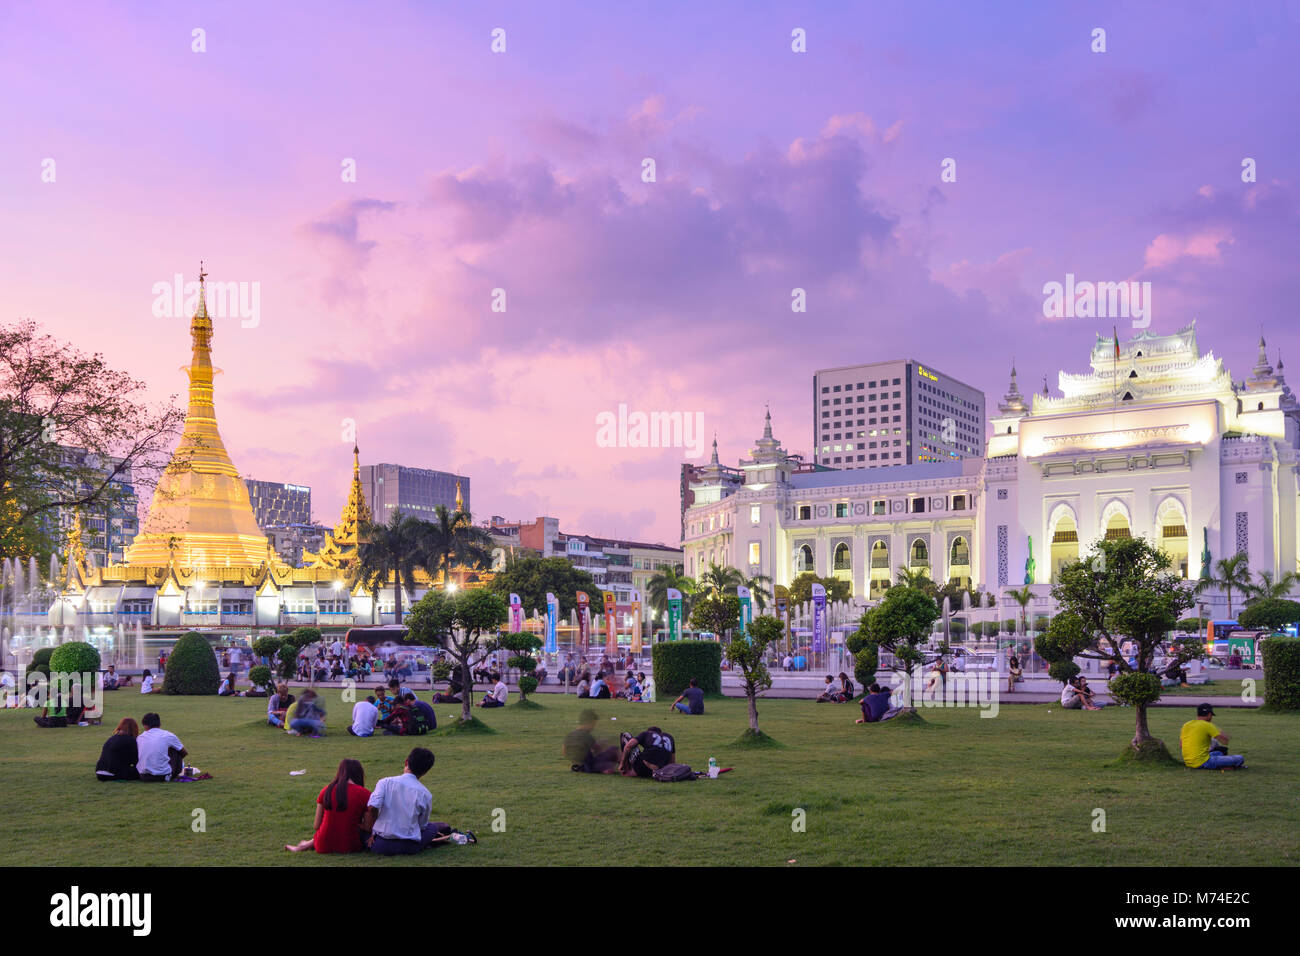 Yangon (Rangoon): Mahabandula (Mahabandoola) giardino (Fytche Square) memorial park, Sule Pagoda, il Municipio, la gente seduta a prato, quartiere coloniale, Foto Stock